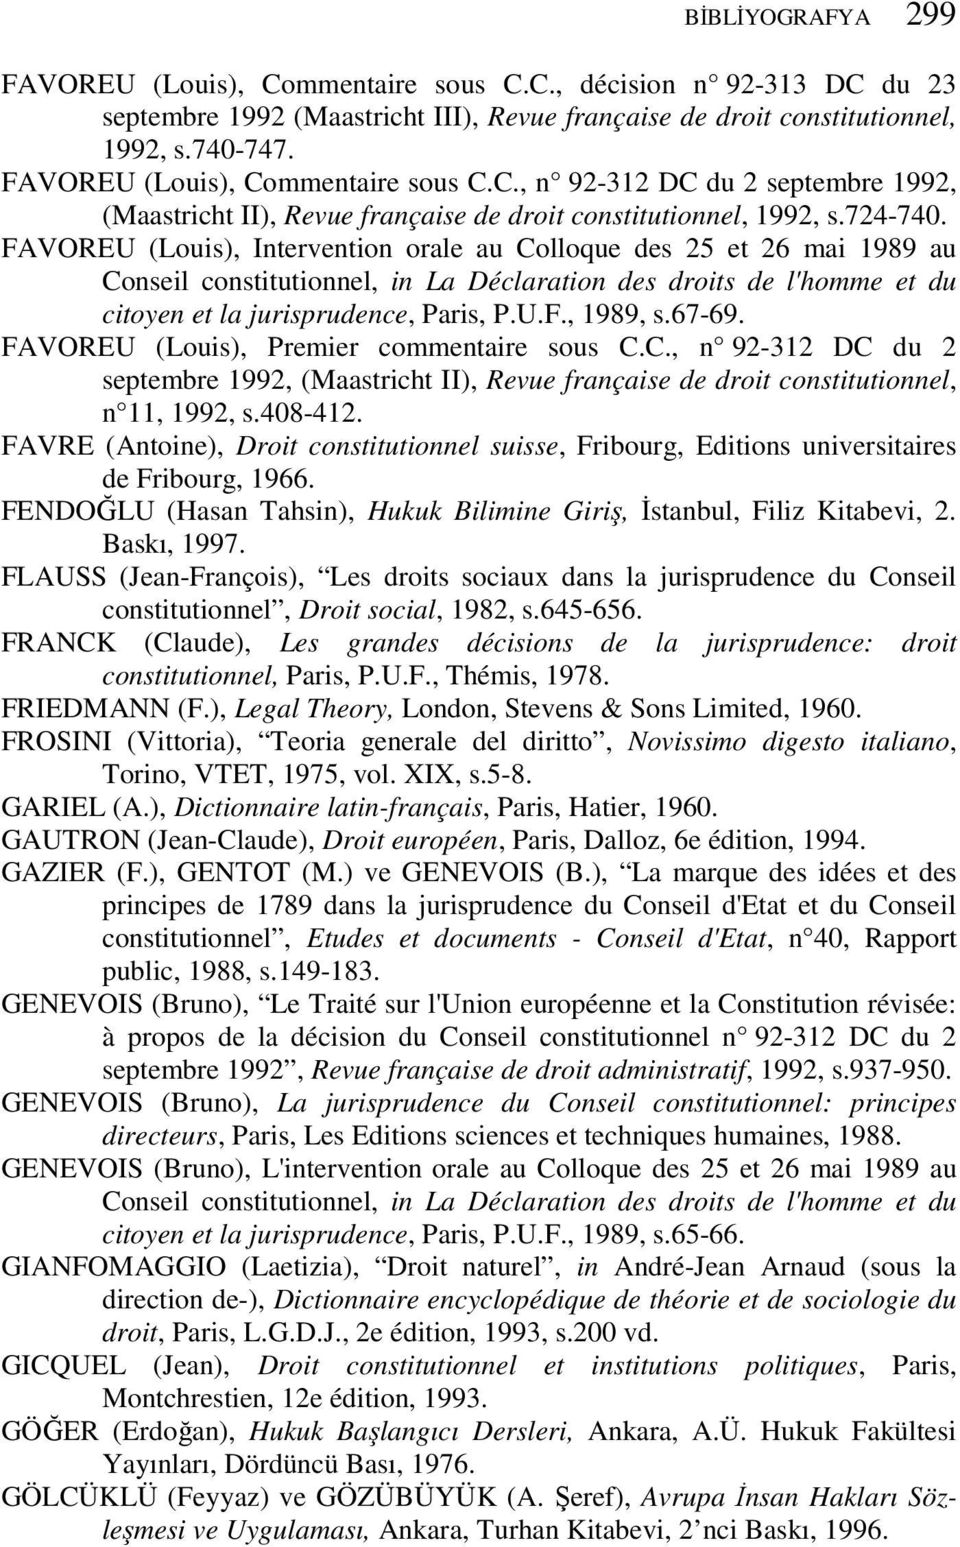 FAVOREU (Louis), Intervention orale au Colloque des 25 et 26 mai 1989 au Conseil constitutionnel, in La Déclaration des droits de l'homme et du citoyen et la jurisprudence, Paris, P.U.F., 1989, s.